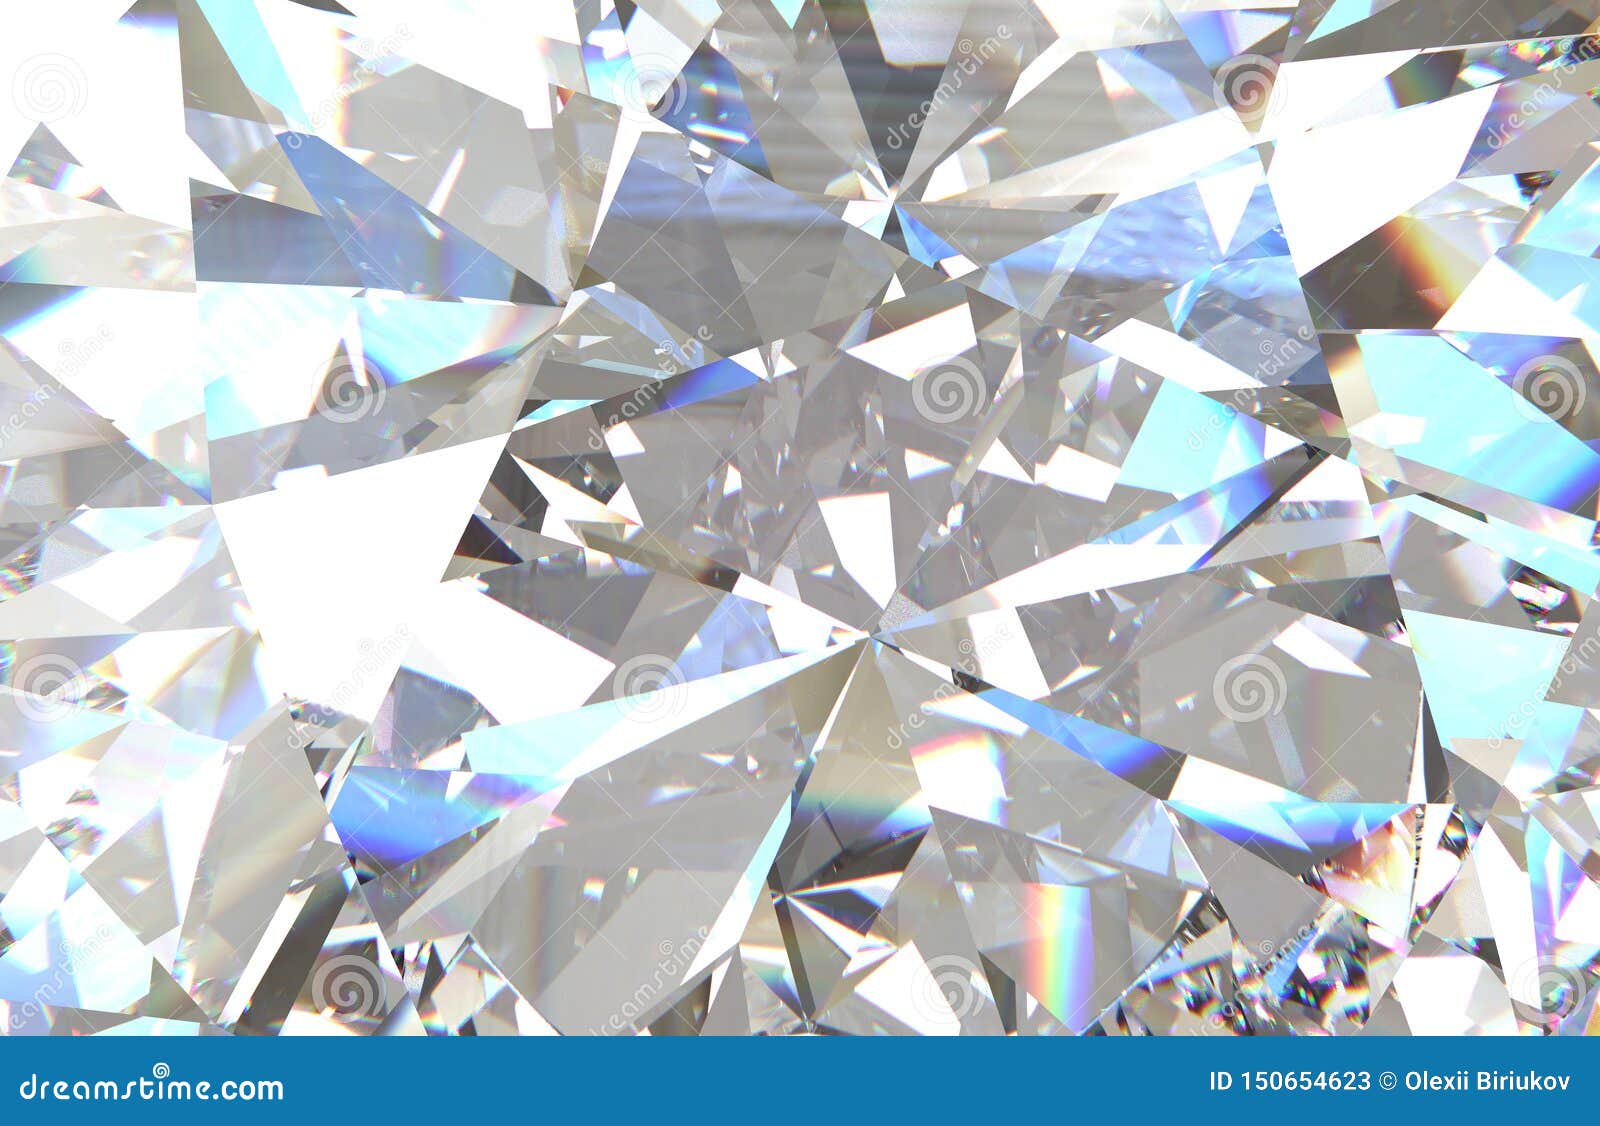 Bạn muốn khám phá một hình khối kim cương tam giác nhiều tầng lấp lánh đầy sức hút? Hãy nhấn vào hình ảnh để tận hưởng vẻ đẹp mê hồn của nó và chìm đắm trong những màu sắc tuyệt đẹp được phản chiếu qua ánh sáng chói lóa.